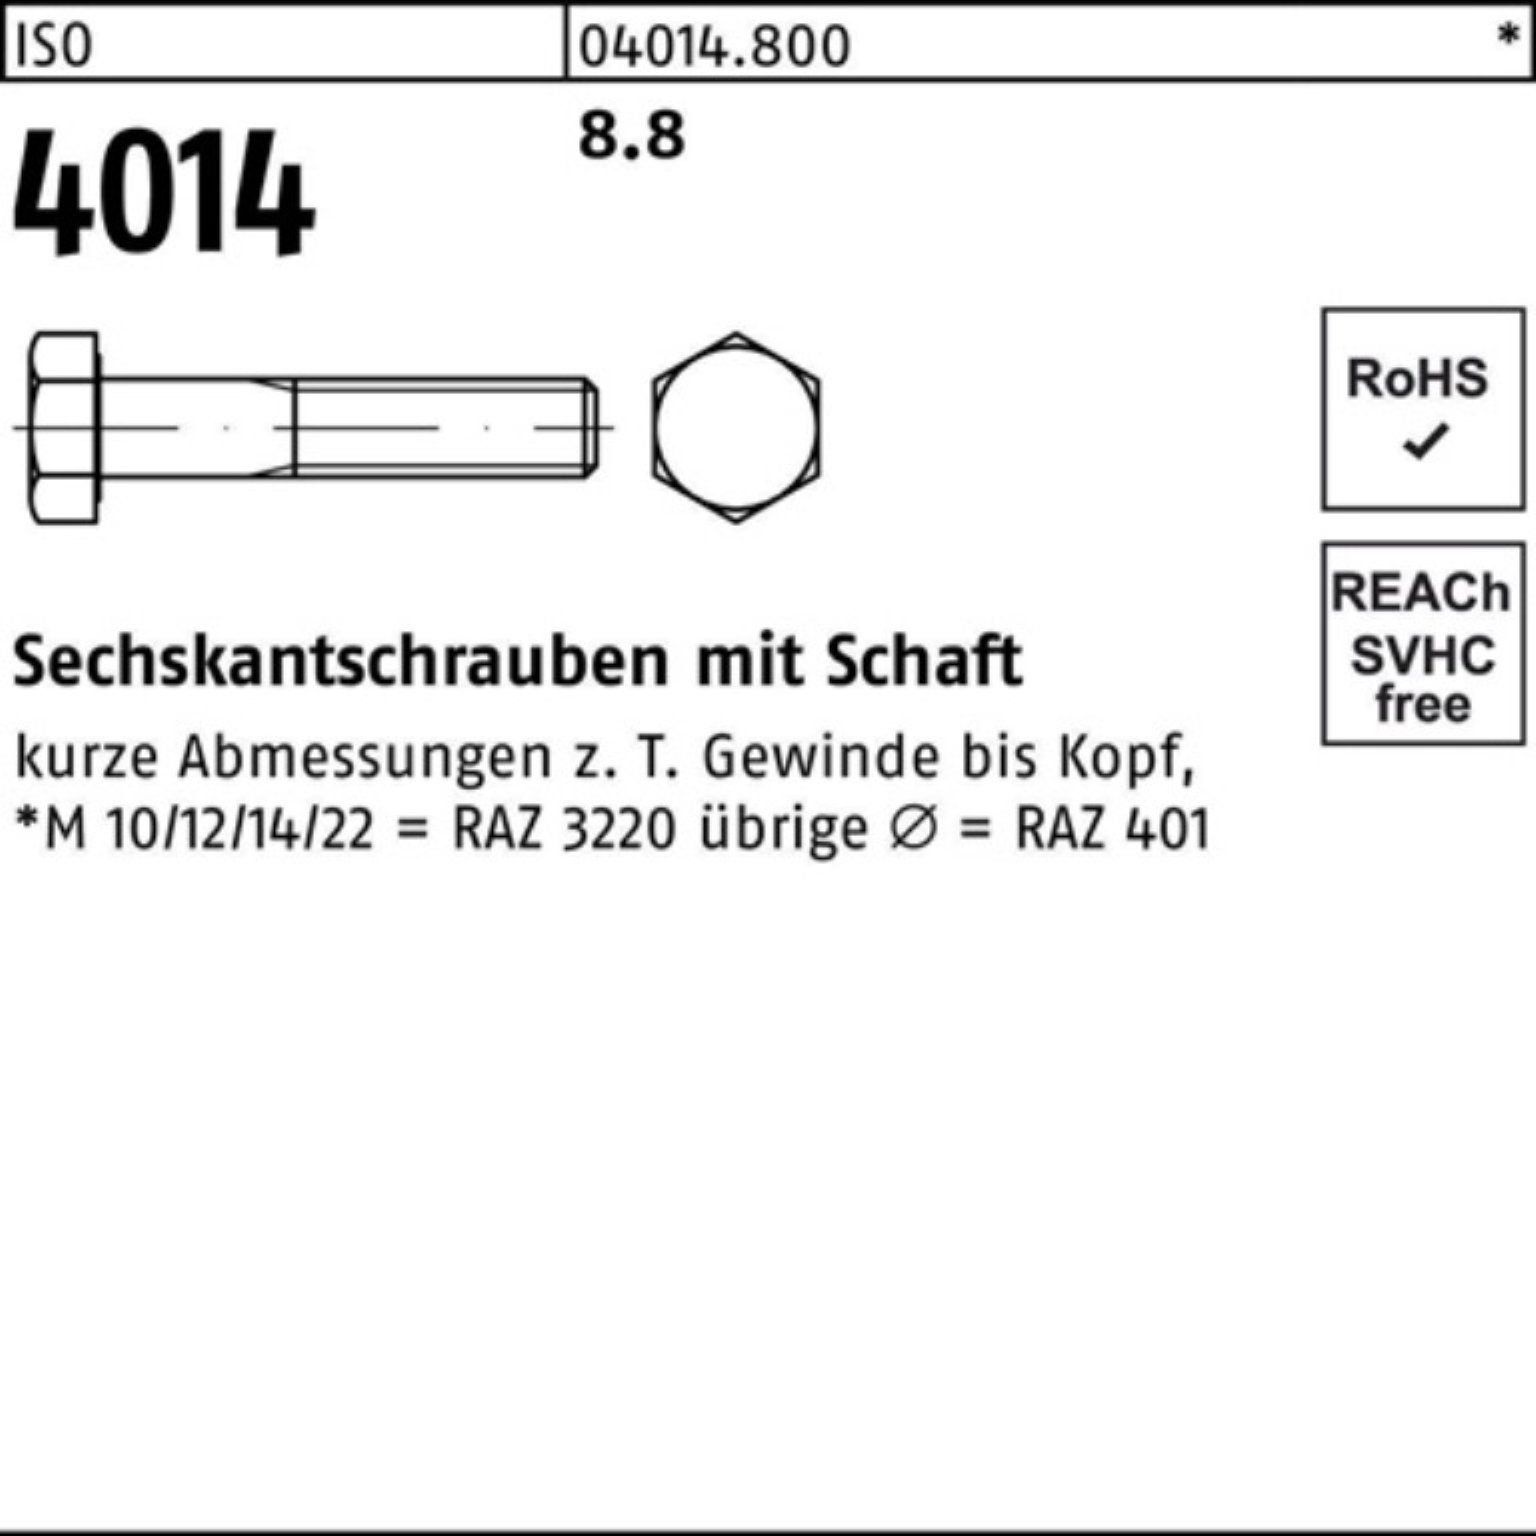 Pack 4014 100er 8.8 1 Stück Sechskantschraube 220 Bufab Sechskantschraube Schaft ISO ISO M42x